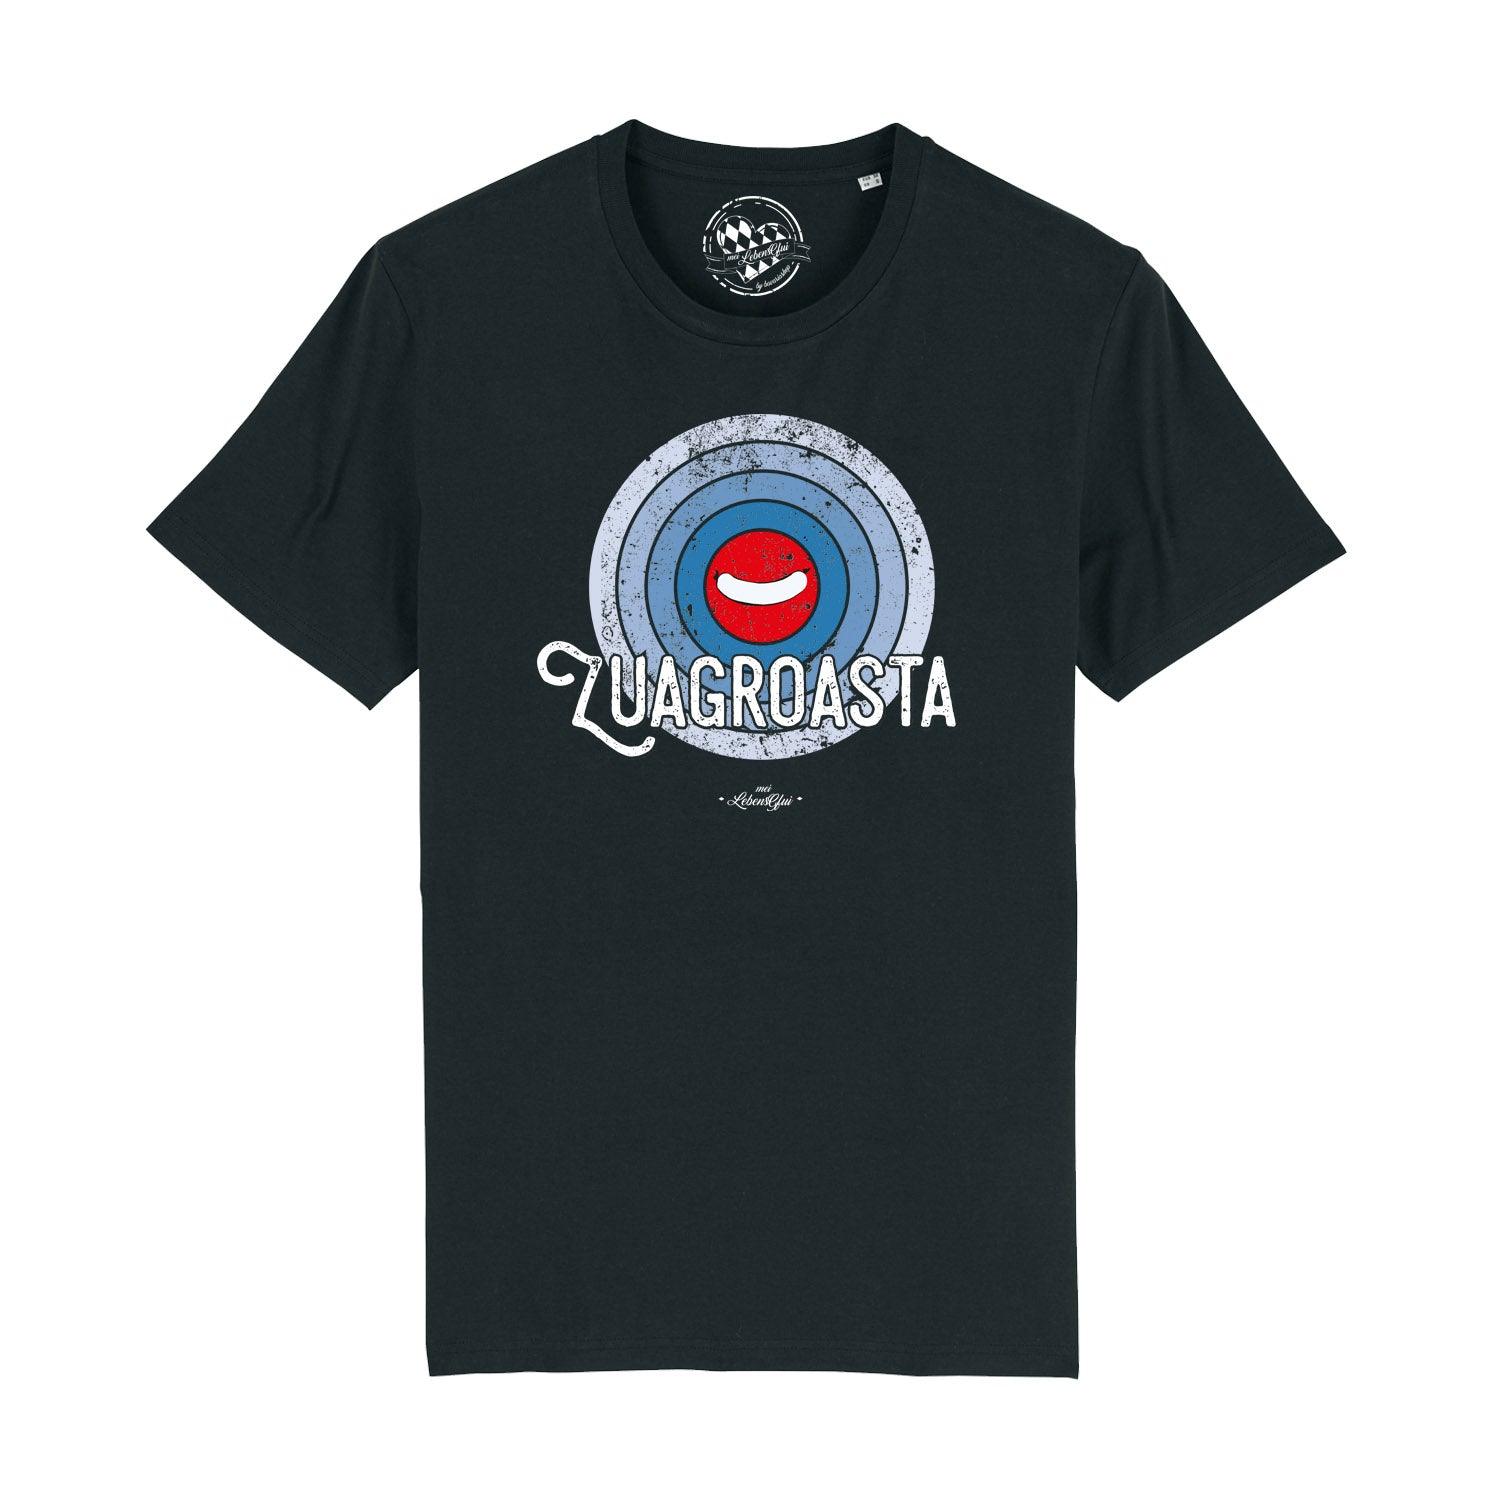 Herren T-Shirt "Zuagroasta" - bavariashop - mei LebensGfui